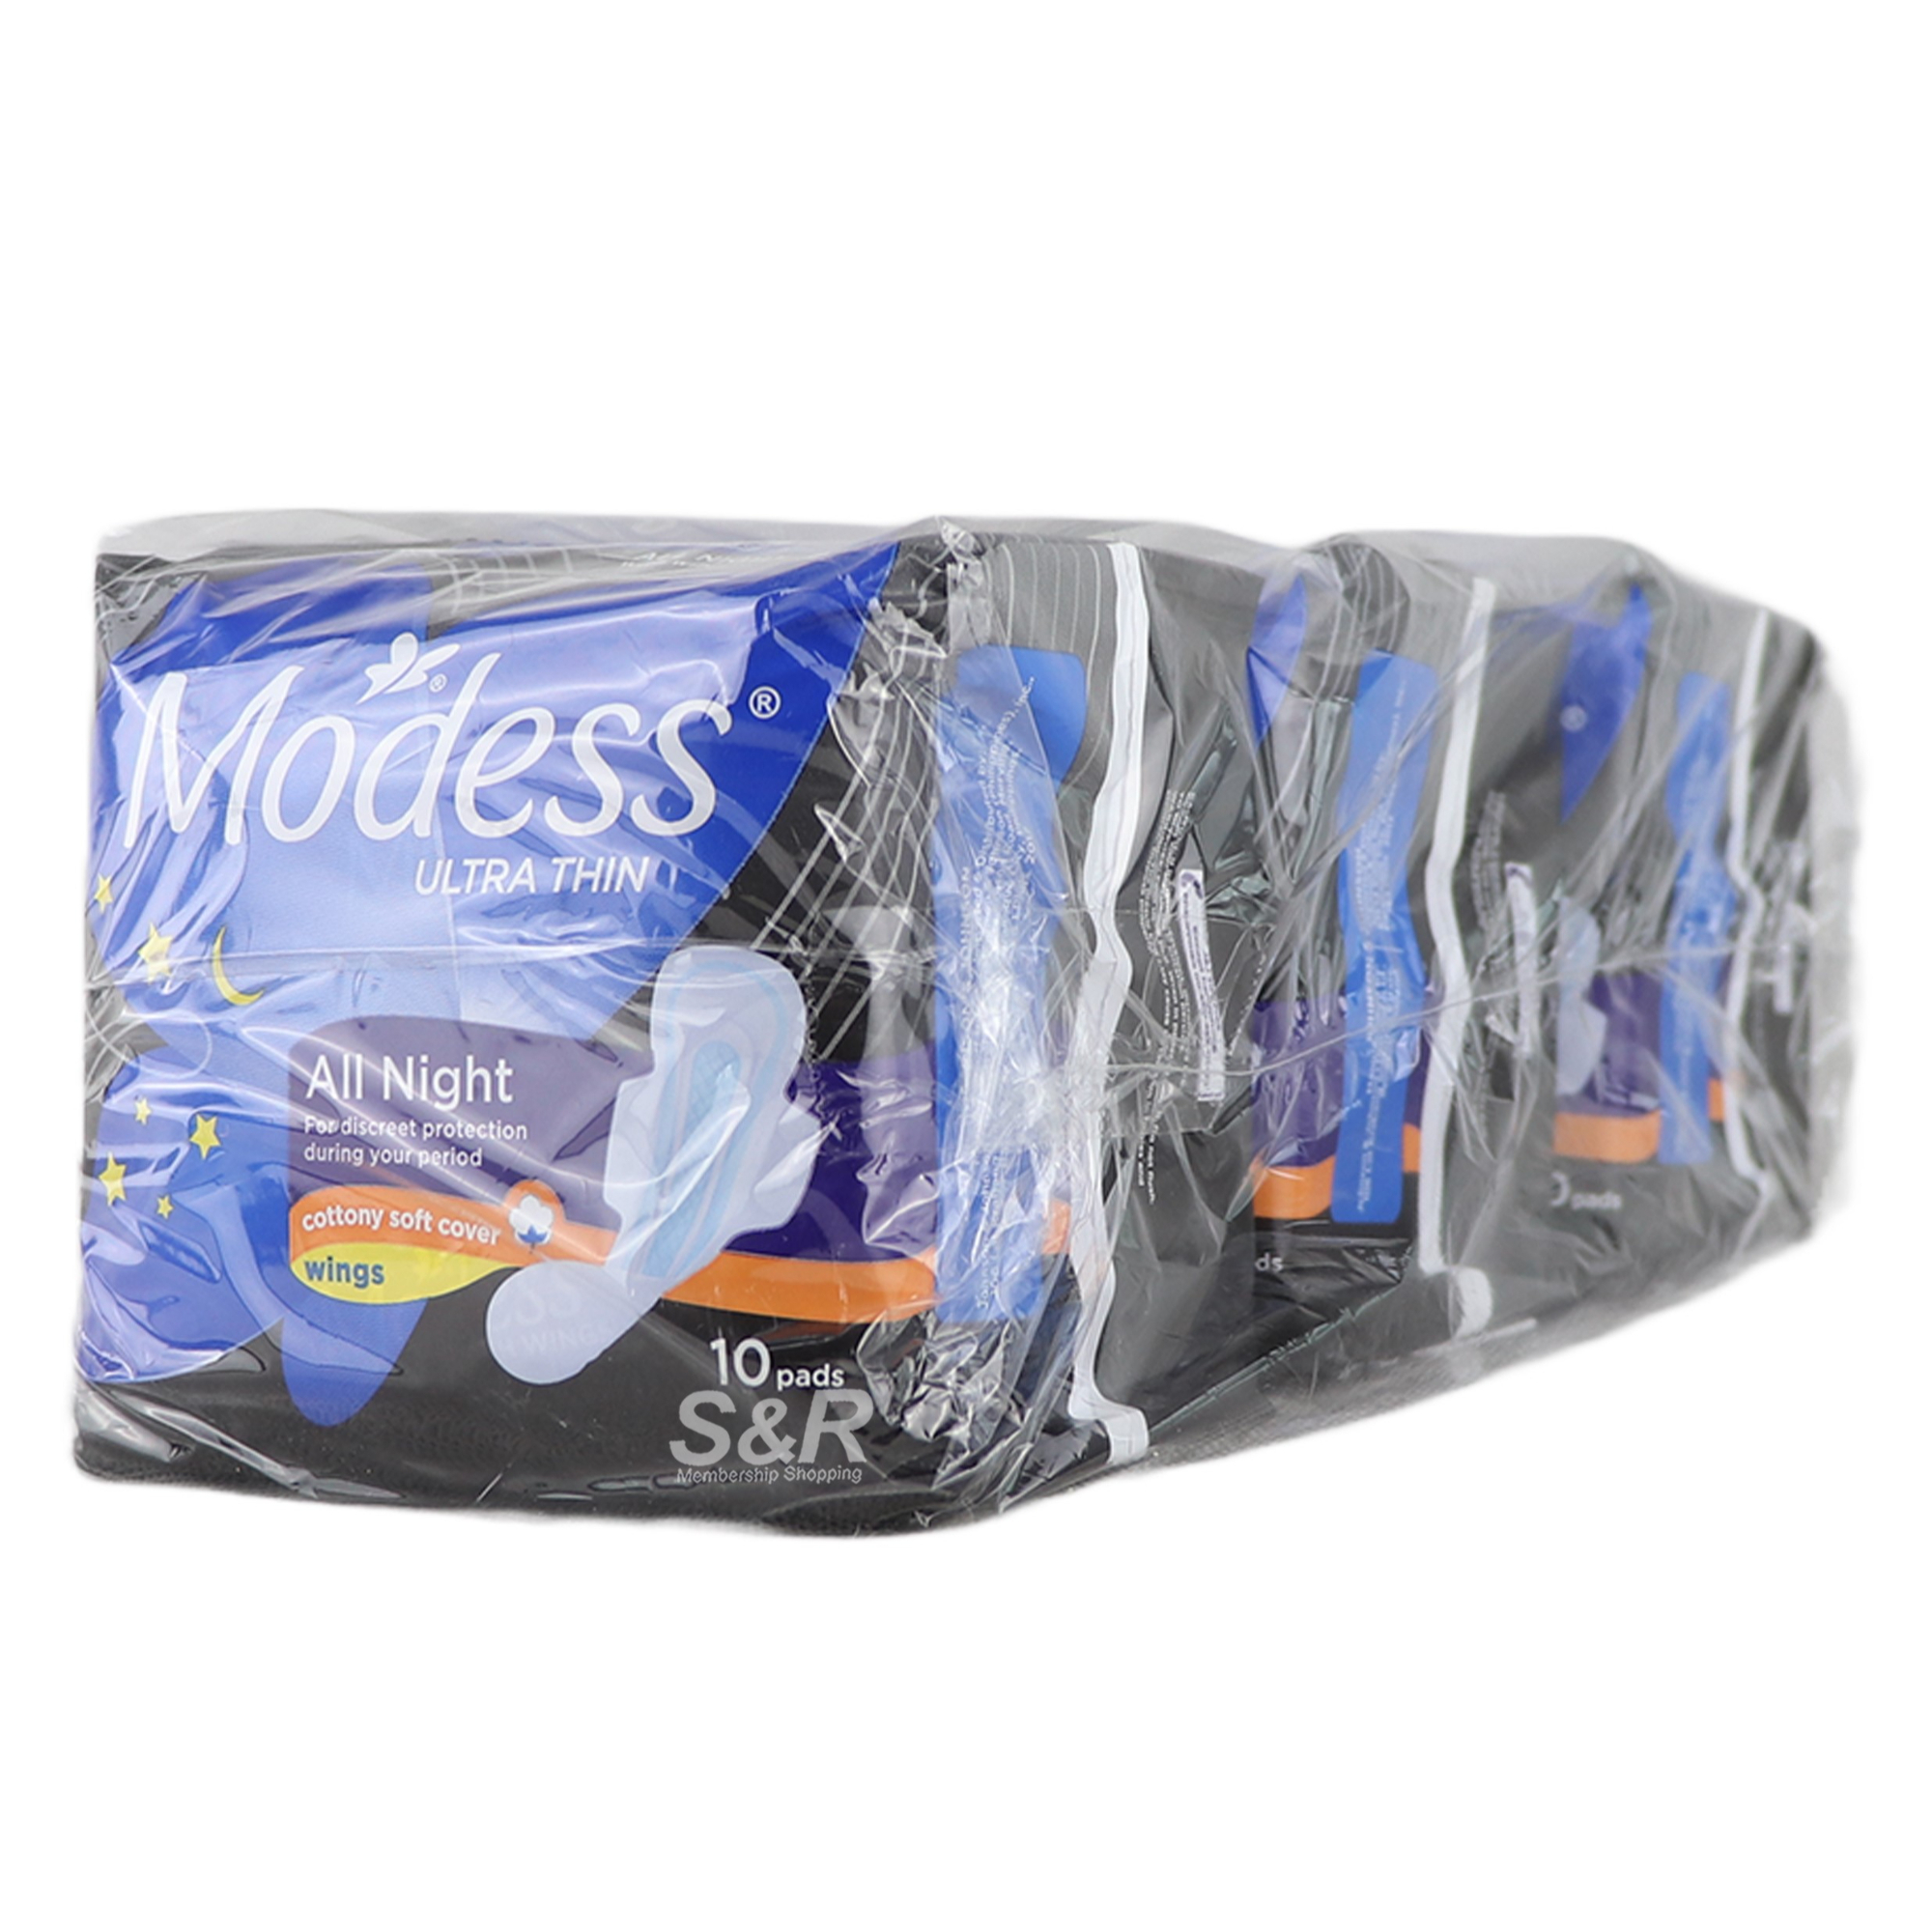 Modess All Night Ultra Thin Sanitary Napkins (10 pads x 3pcs)